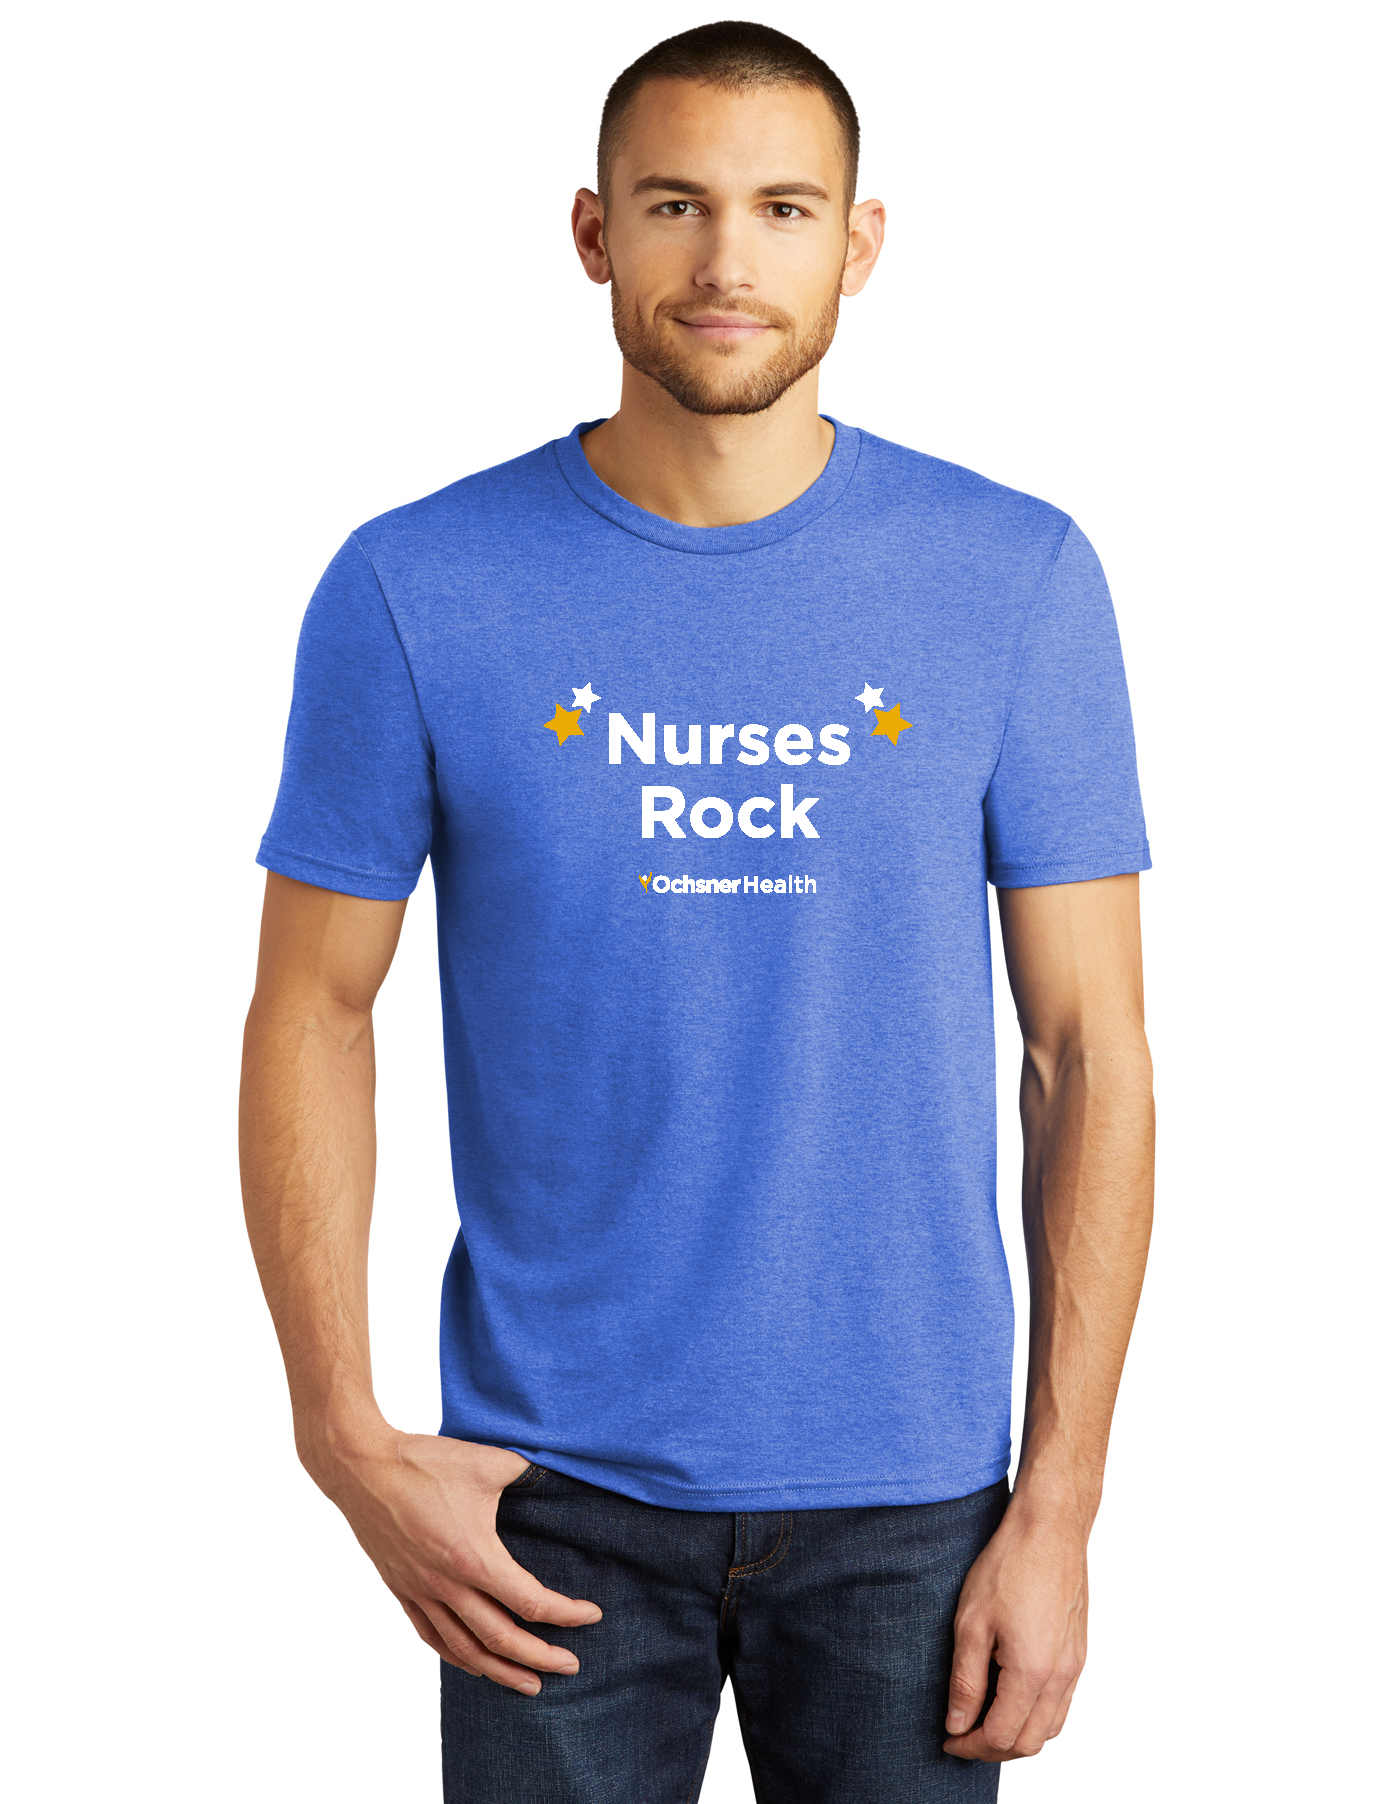 Nurses Rock Unisex T-Shirt, , large image number 1